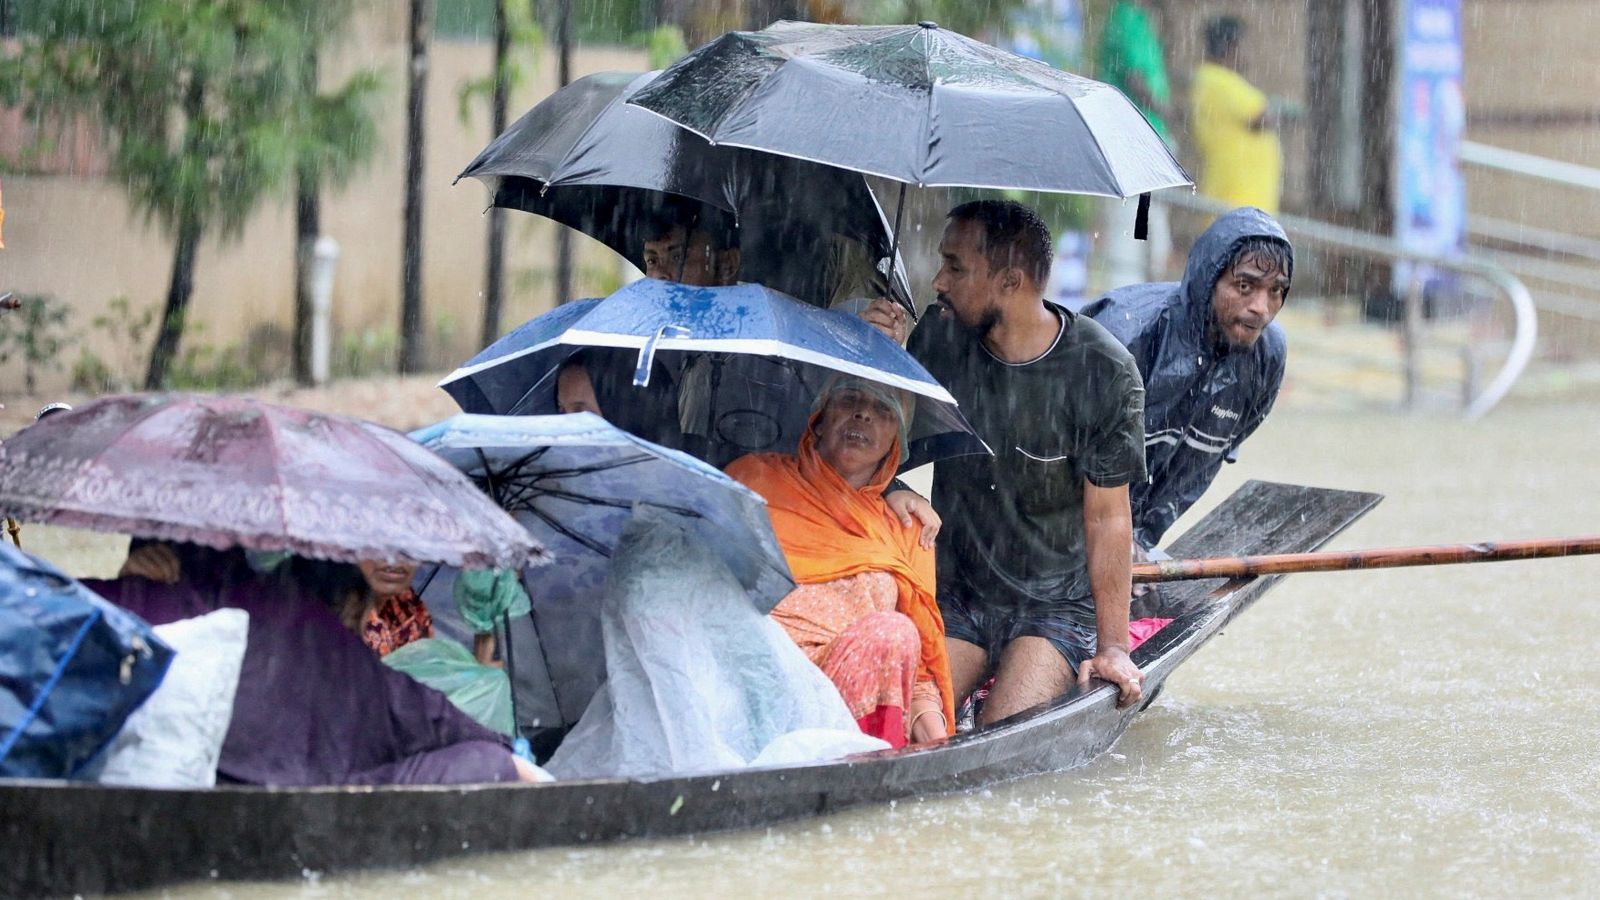 Mindestens 62 Menschen starben in Bangladesch und Indien, nachdem Überschwemmungen Millionen gestrandet ließen |  Weltnachrichten